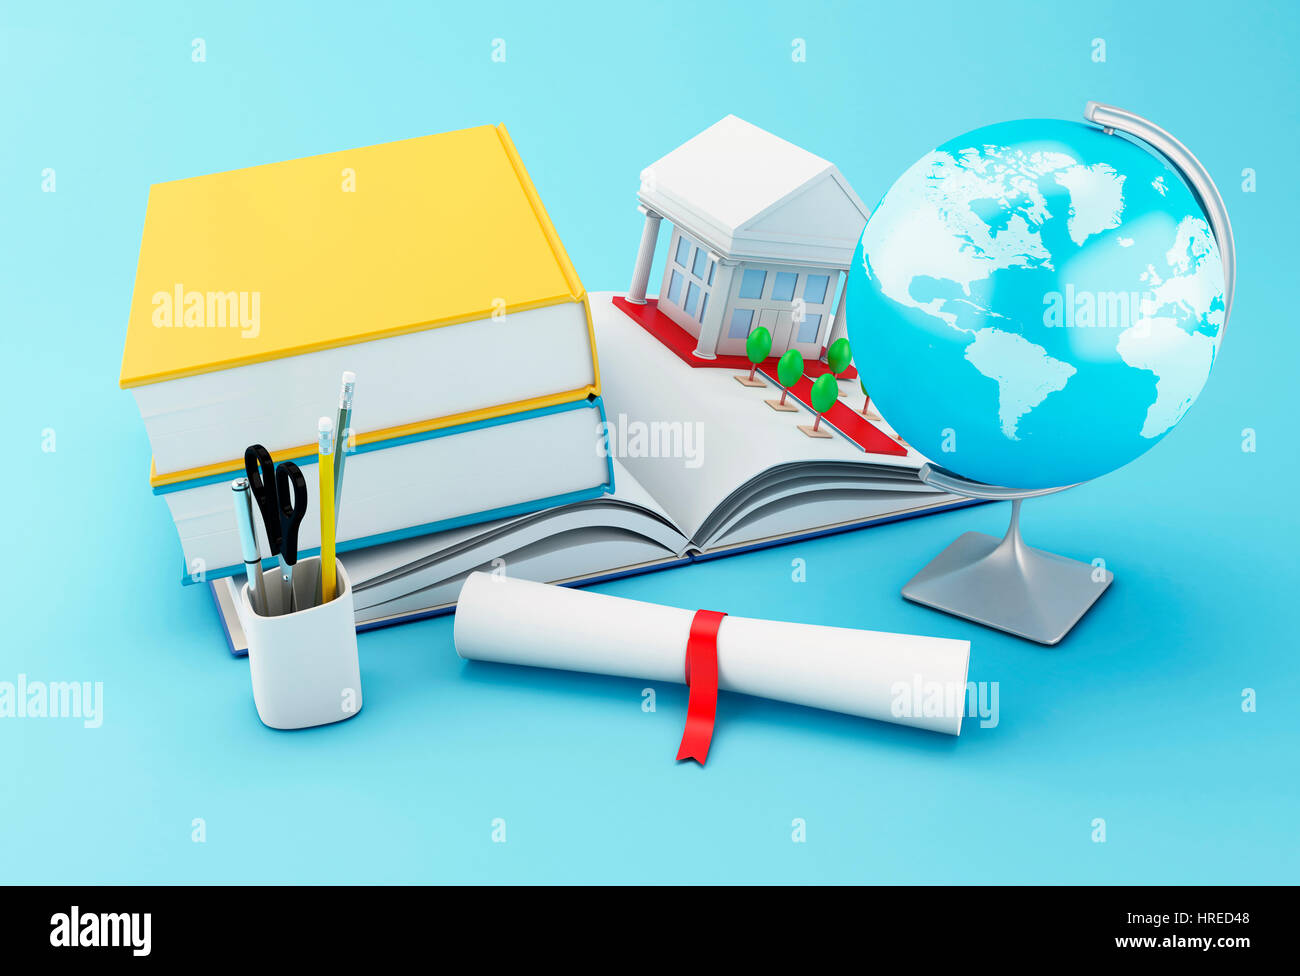 3D Illustration. Stapel von Buch mit gerollten Diplom, Globe und Universitätsgebäude. Welt-Promotion-Konzept. Stockfoto